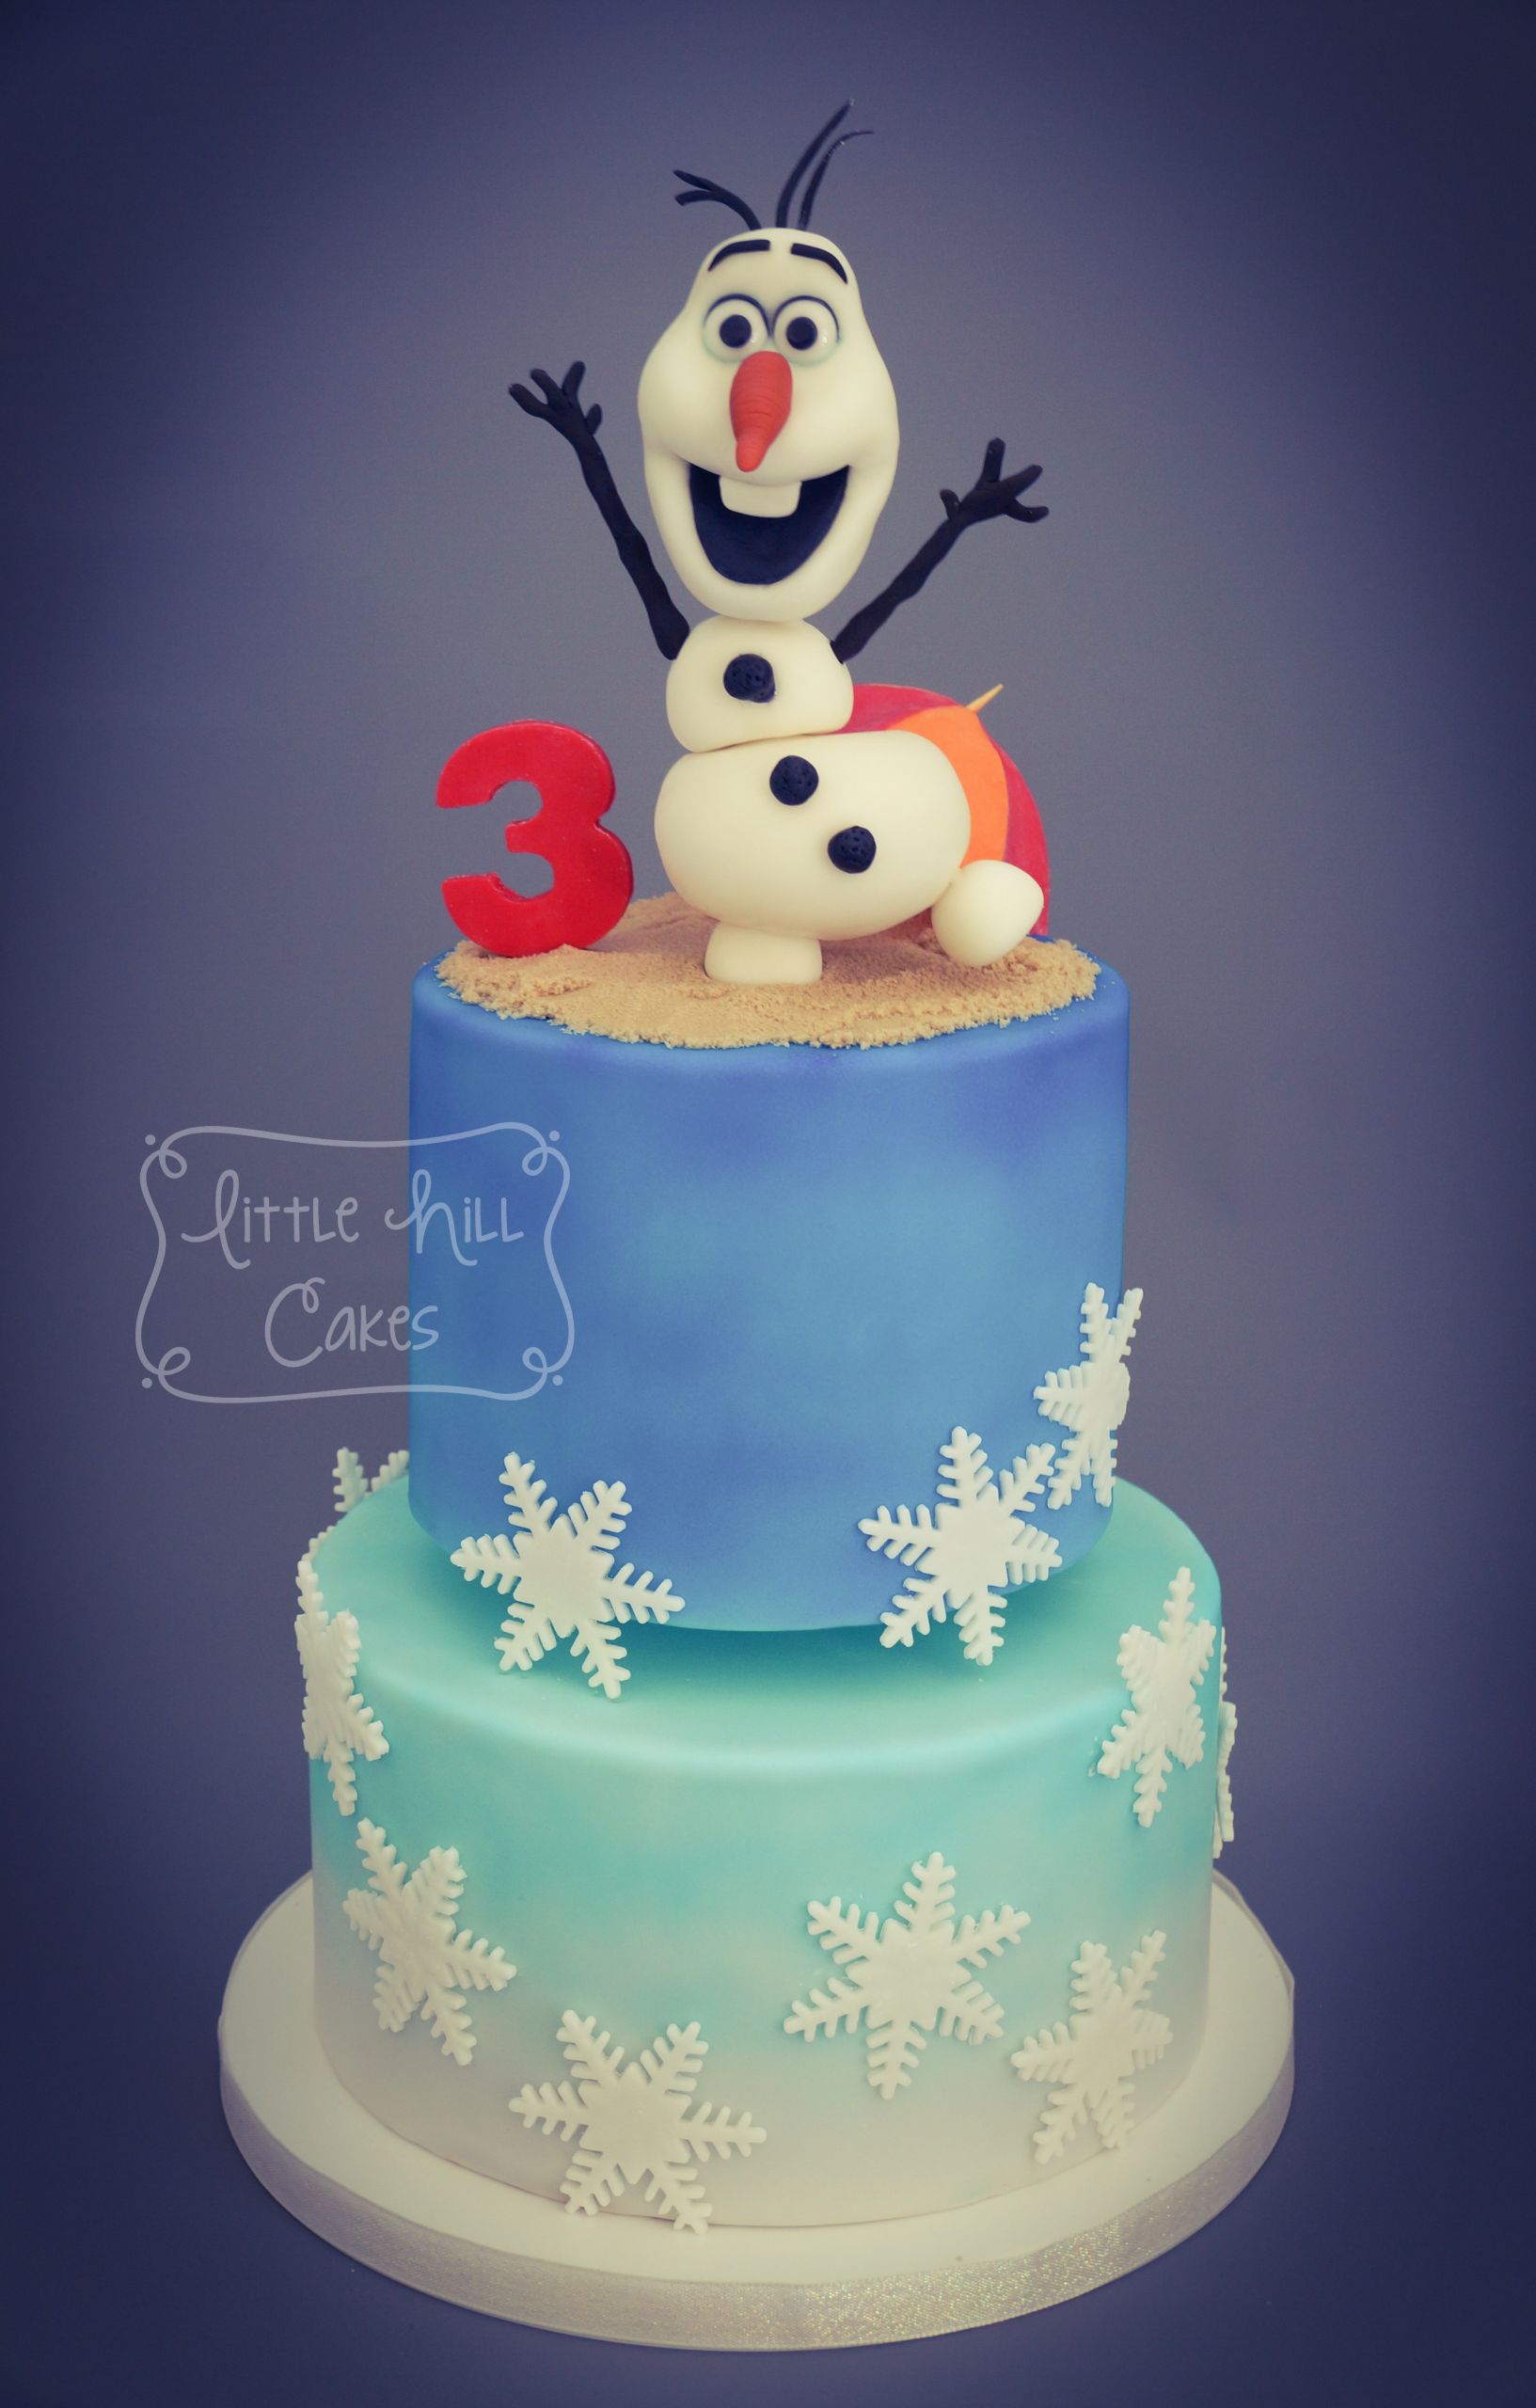 Olaf Birthday Cakes
 ‘Olaf in Summer’ 3rd Birthday Cake